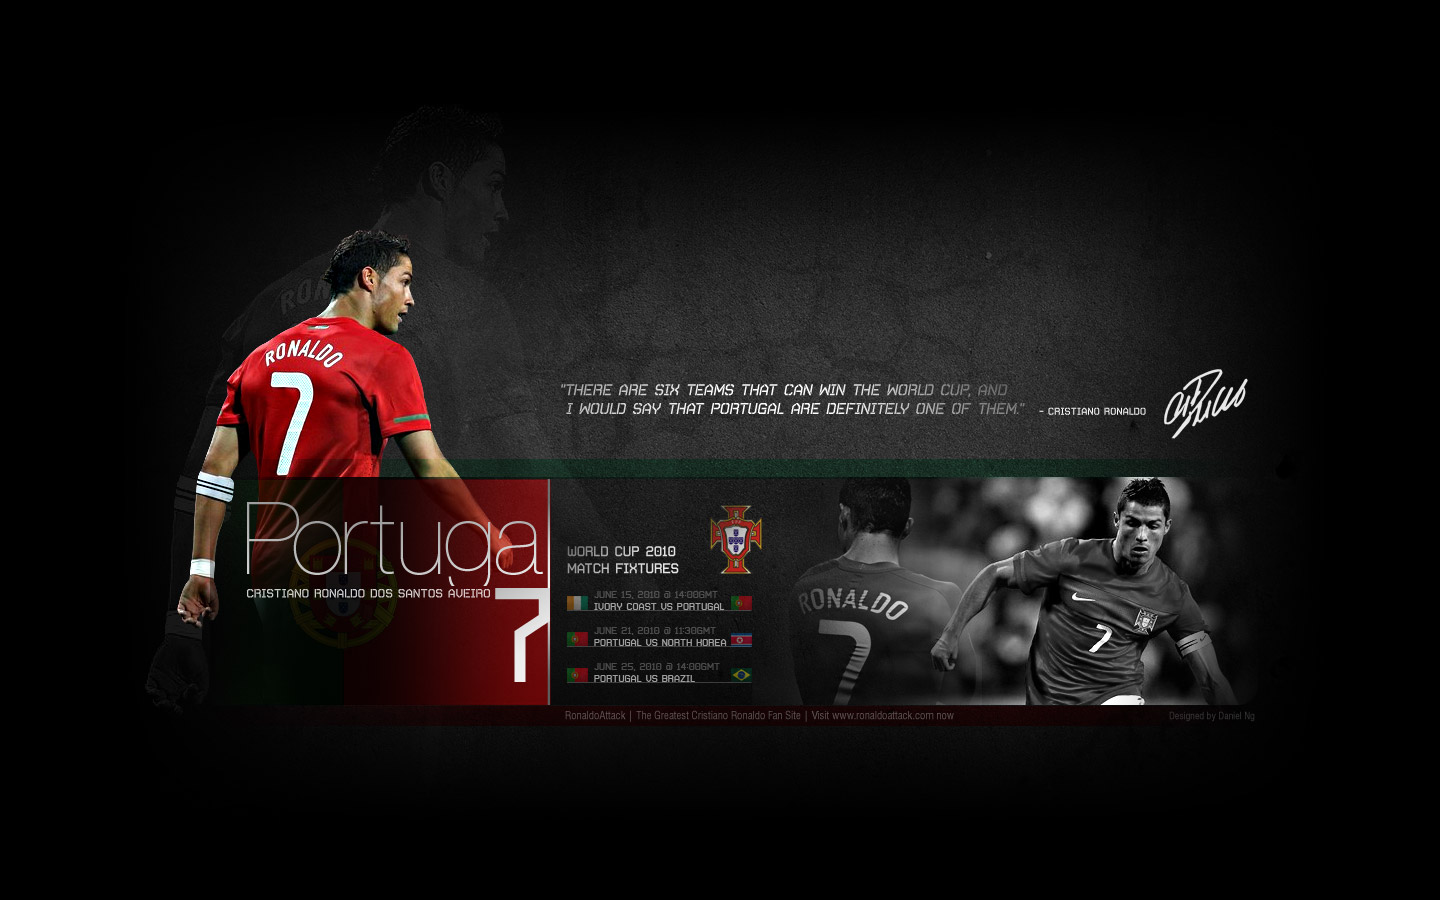 Portugal Cristiano Ronaldo Wallpaper